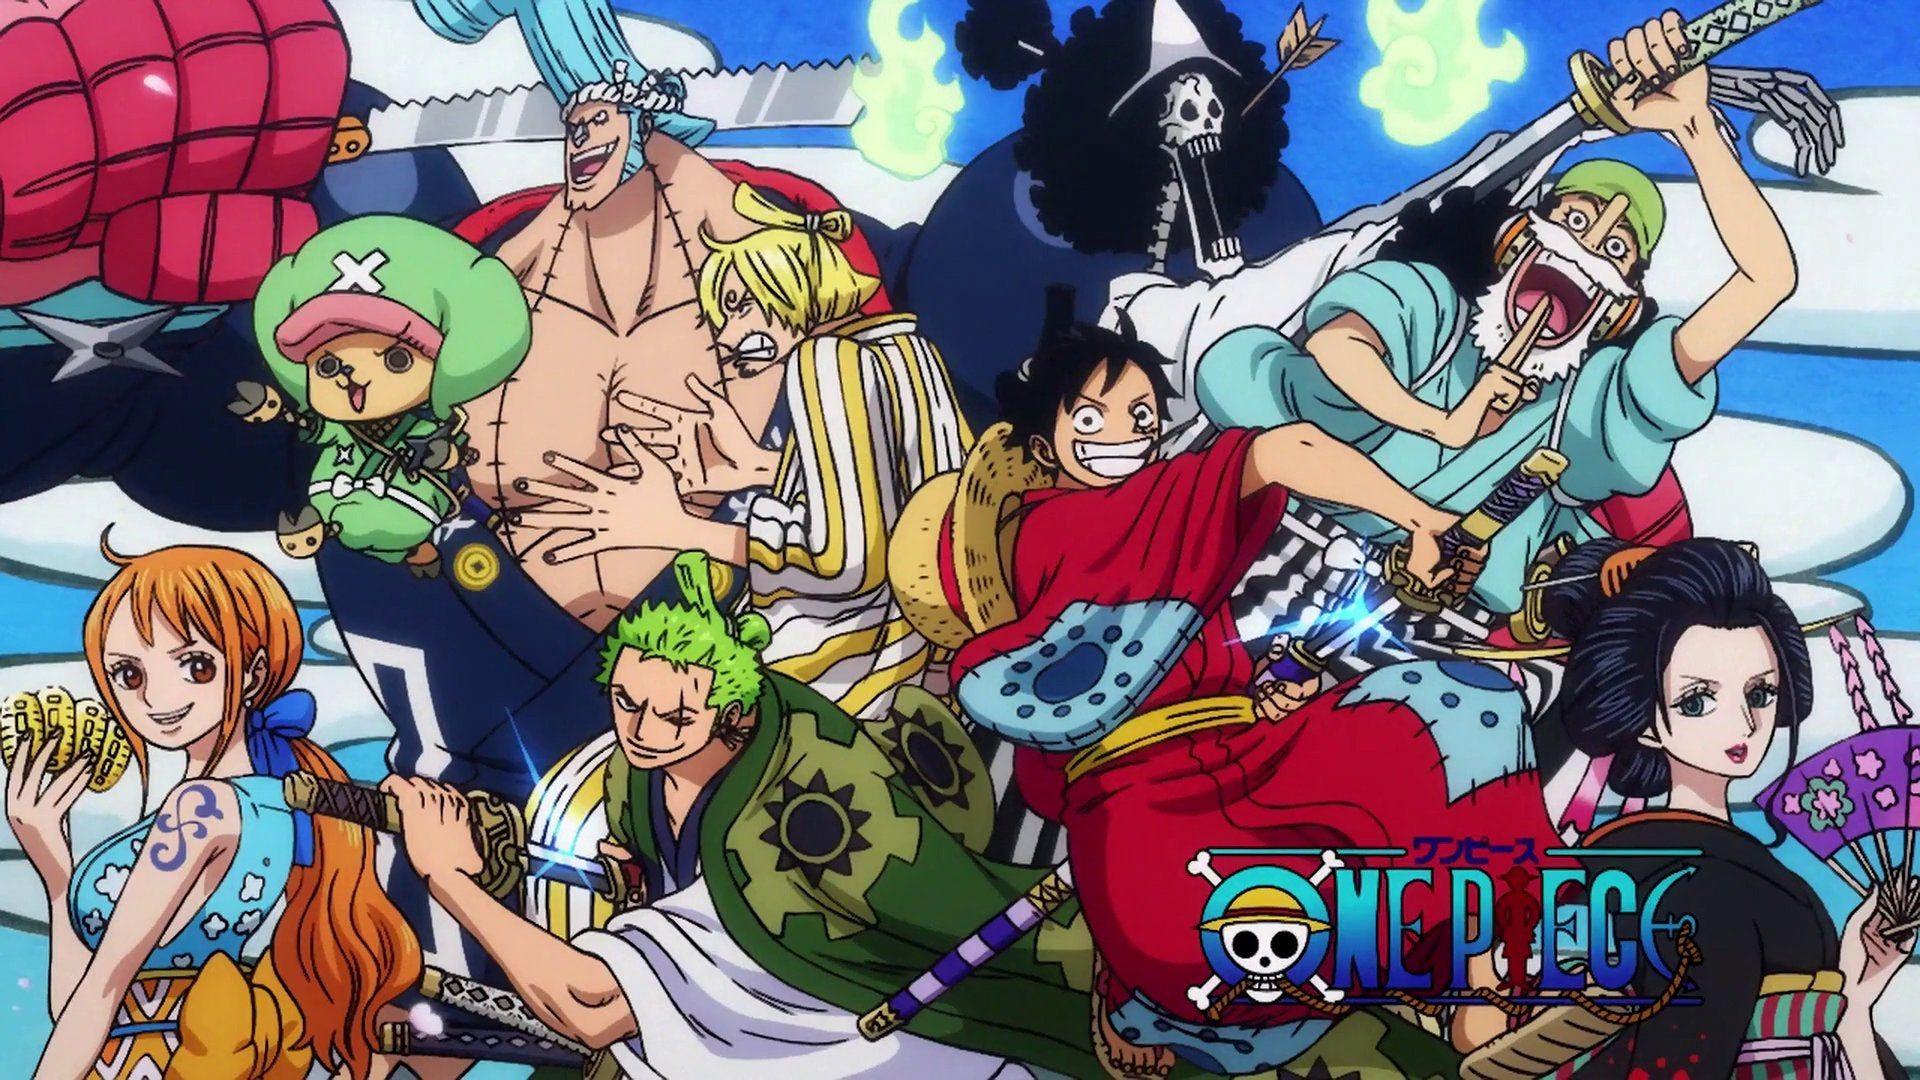 Manga One Piece là một trong những bộ truyện tranh ăn khách nhất hiện nay, mang đến cho người đọc những cảm xúc sâu sắc và không quên được. Cùng chiêm ngưỡng các hình nền với những cảnh quan tuyệt đẹp và kỳ ảo của One Piece, bạn sẽ nhận thấy sức hút mãnh liệt của bộ truyện nổi tiếng này.